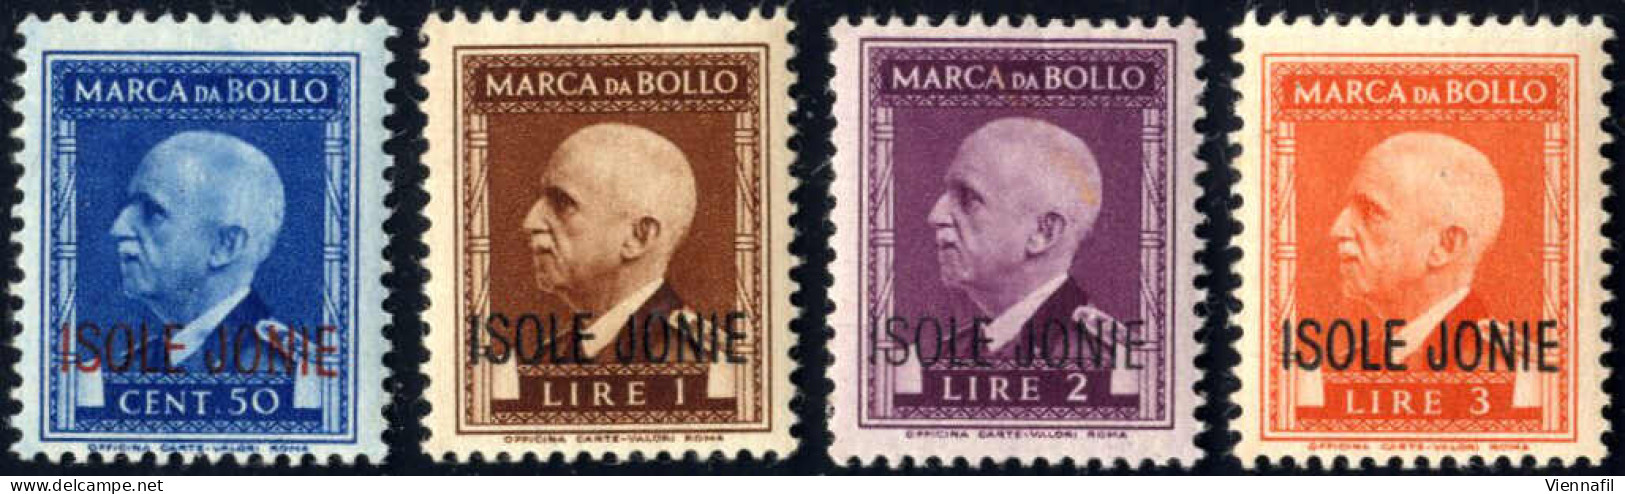 ** 1941, Marche Da Bollo Con Effigie Di VE III Con Soprastampa "ISOLE JONIE", Serie Di 8 Valori Da 50 C. A 50 L. Nuovi C - Ionische Inseln